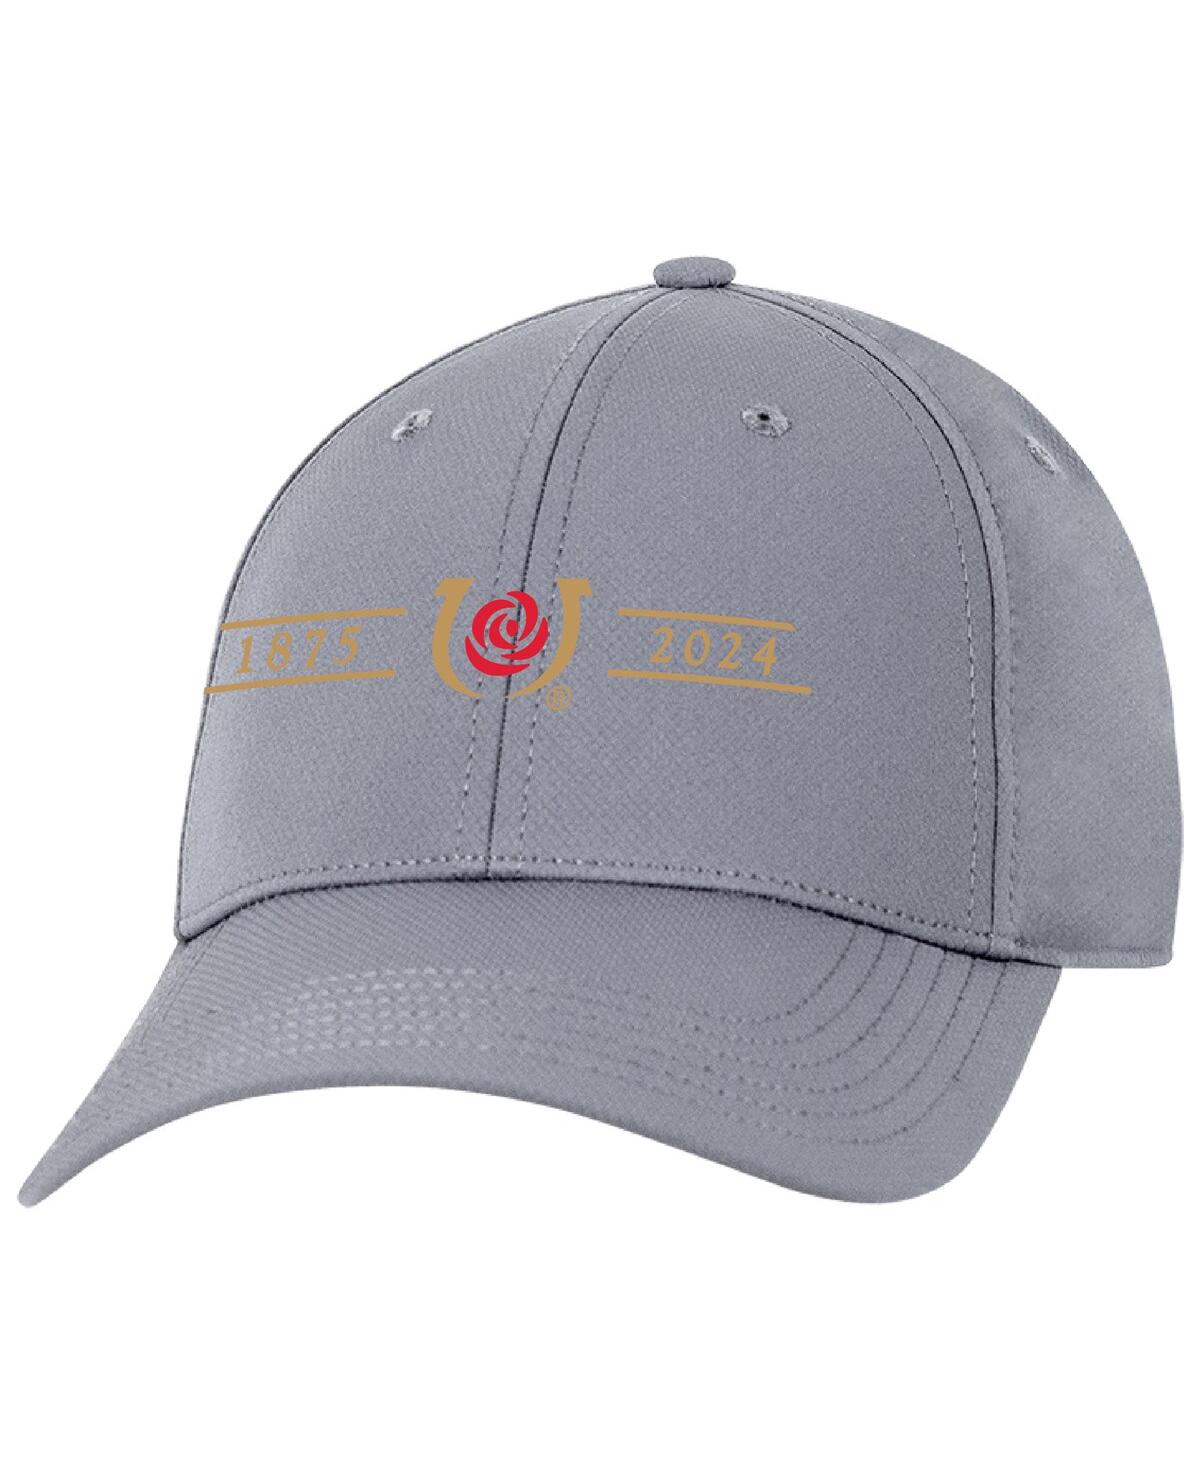 Shop Ahead Men's  Gray Kentucky Derby 150 Stratus Adjustable Hat